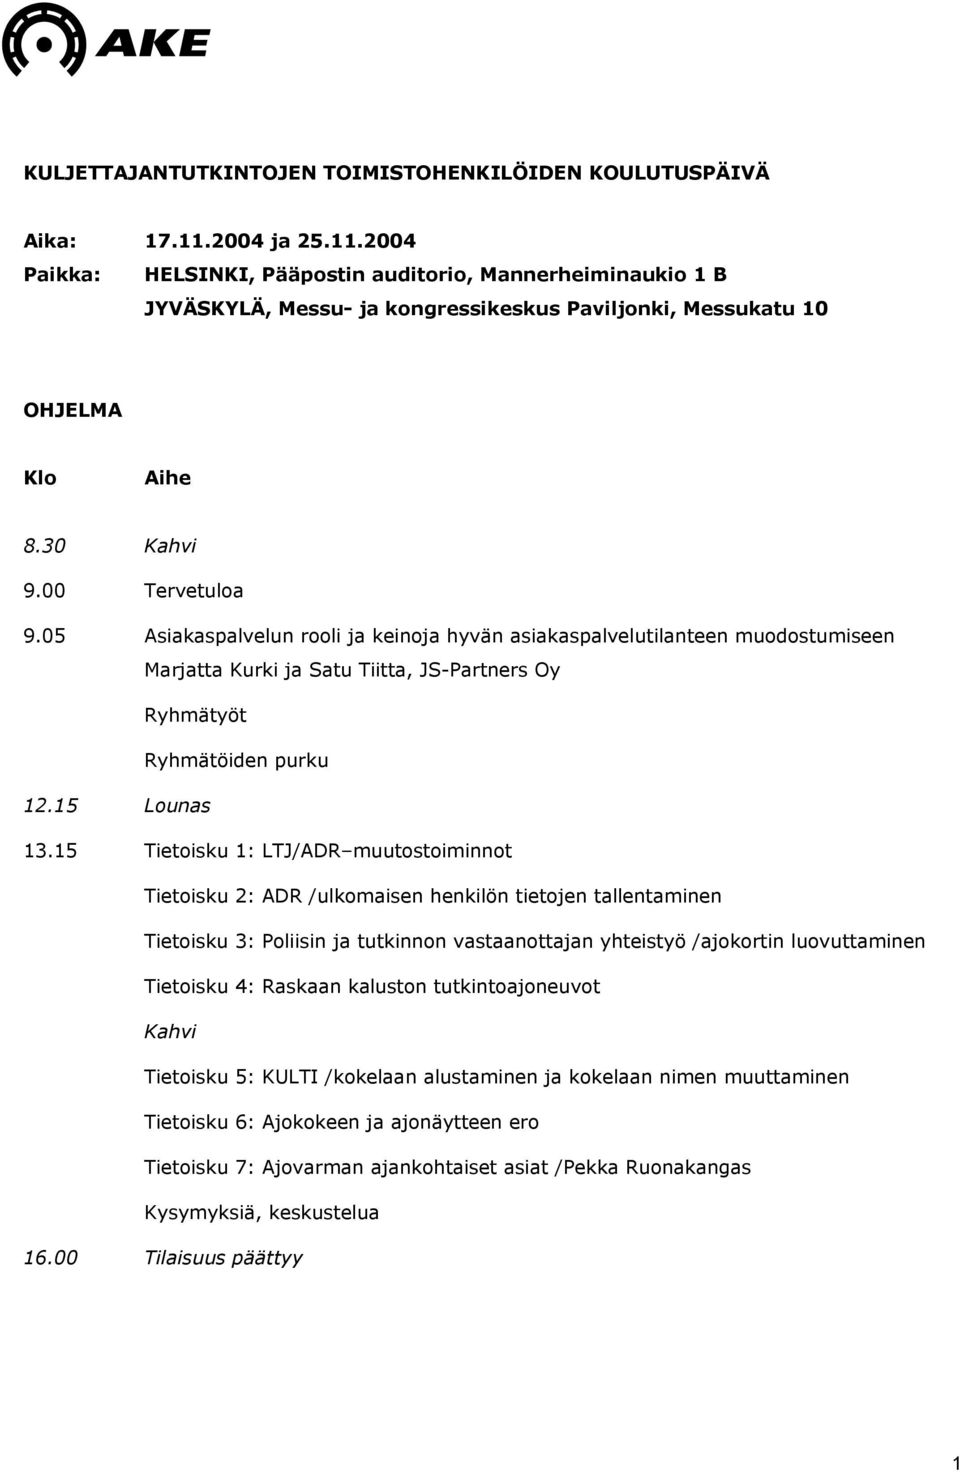 05 Asiakaspalvelun rooli ja keinoja hyvän asiakaspalvelutilanteen muodostumiseen Marjatta Kurki ja Satu Tiitta, JS-Partners Oy Ryhmätyöt Ryhmätöiden purku 12.15 Lounas 13.